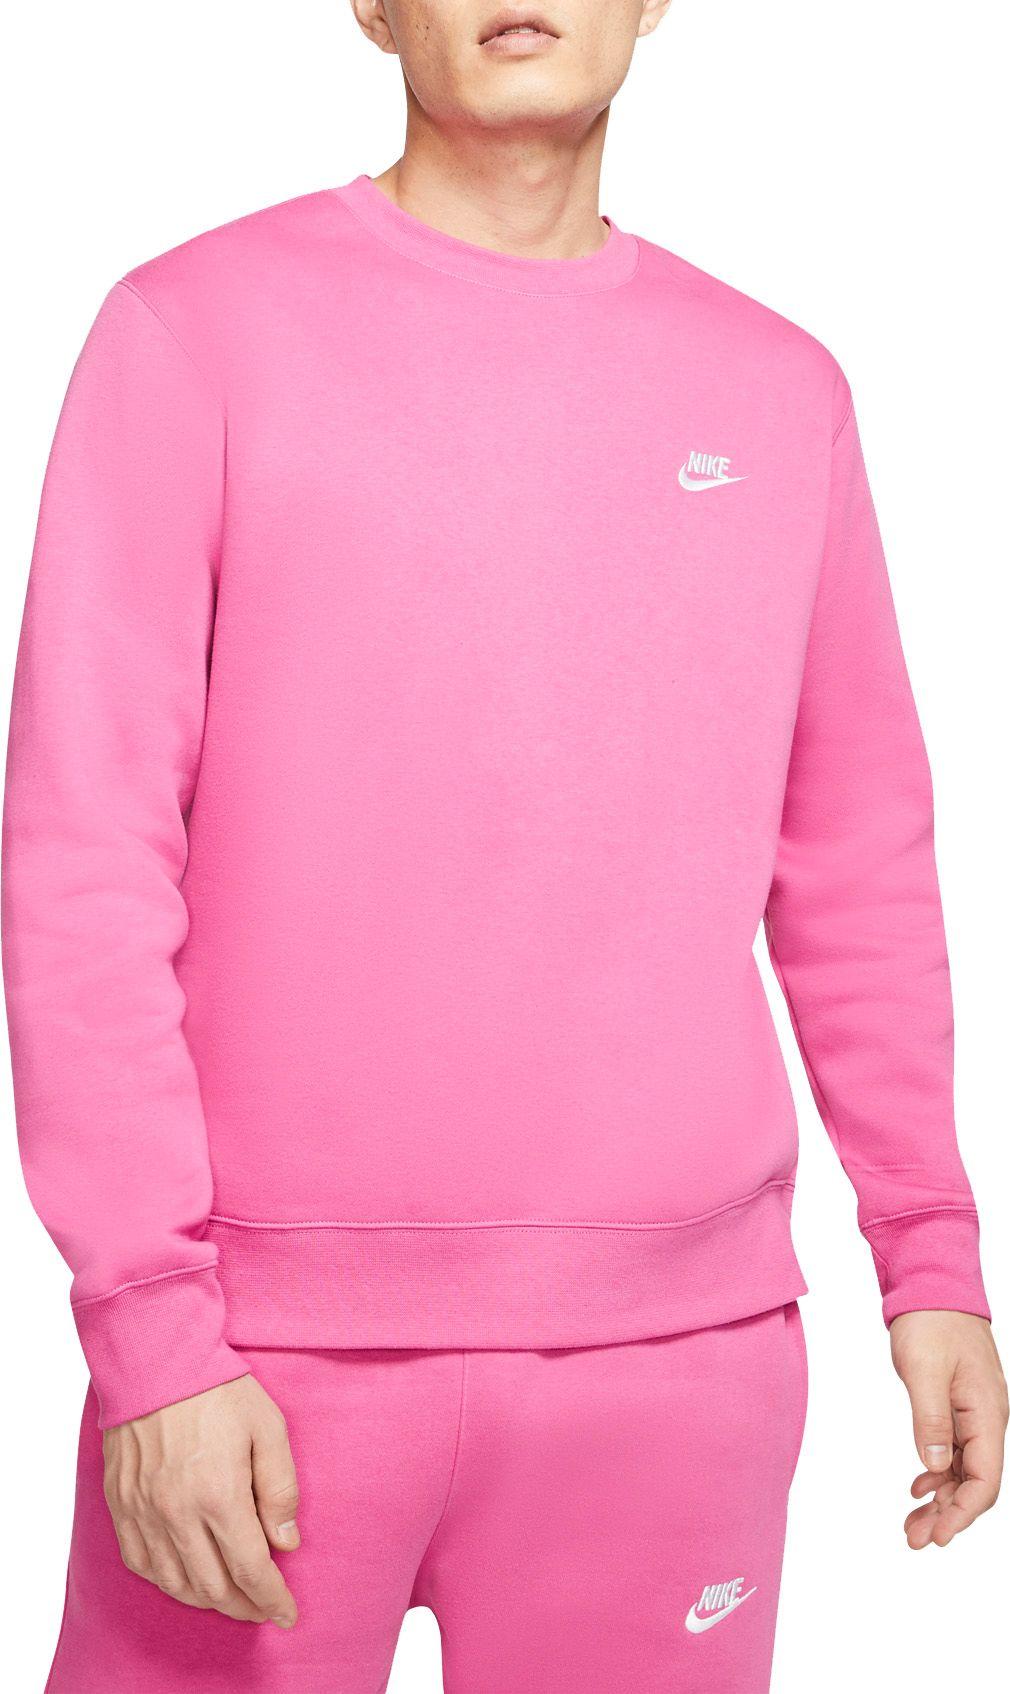 pink nike sweatshirt mens